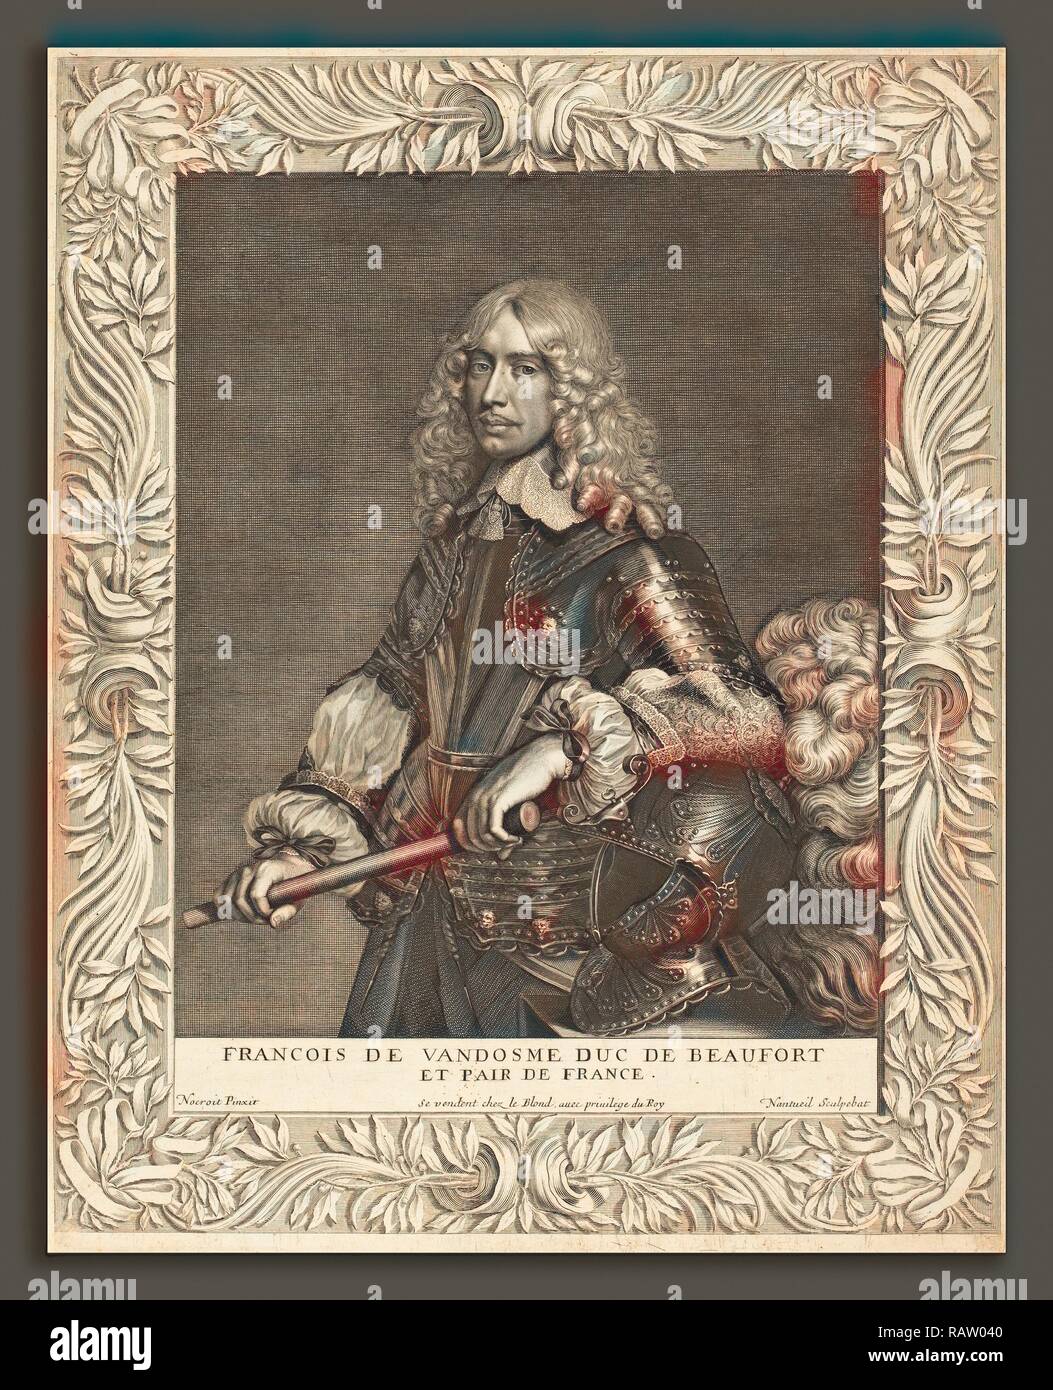 Robert Nanteuil après Jean Nocret (Français, 1623 - 1678), François, duc de Beaufort, 1649, gravure. Repensé Banque D'Images